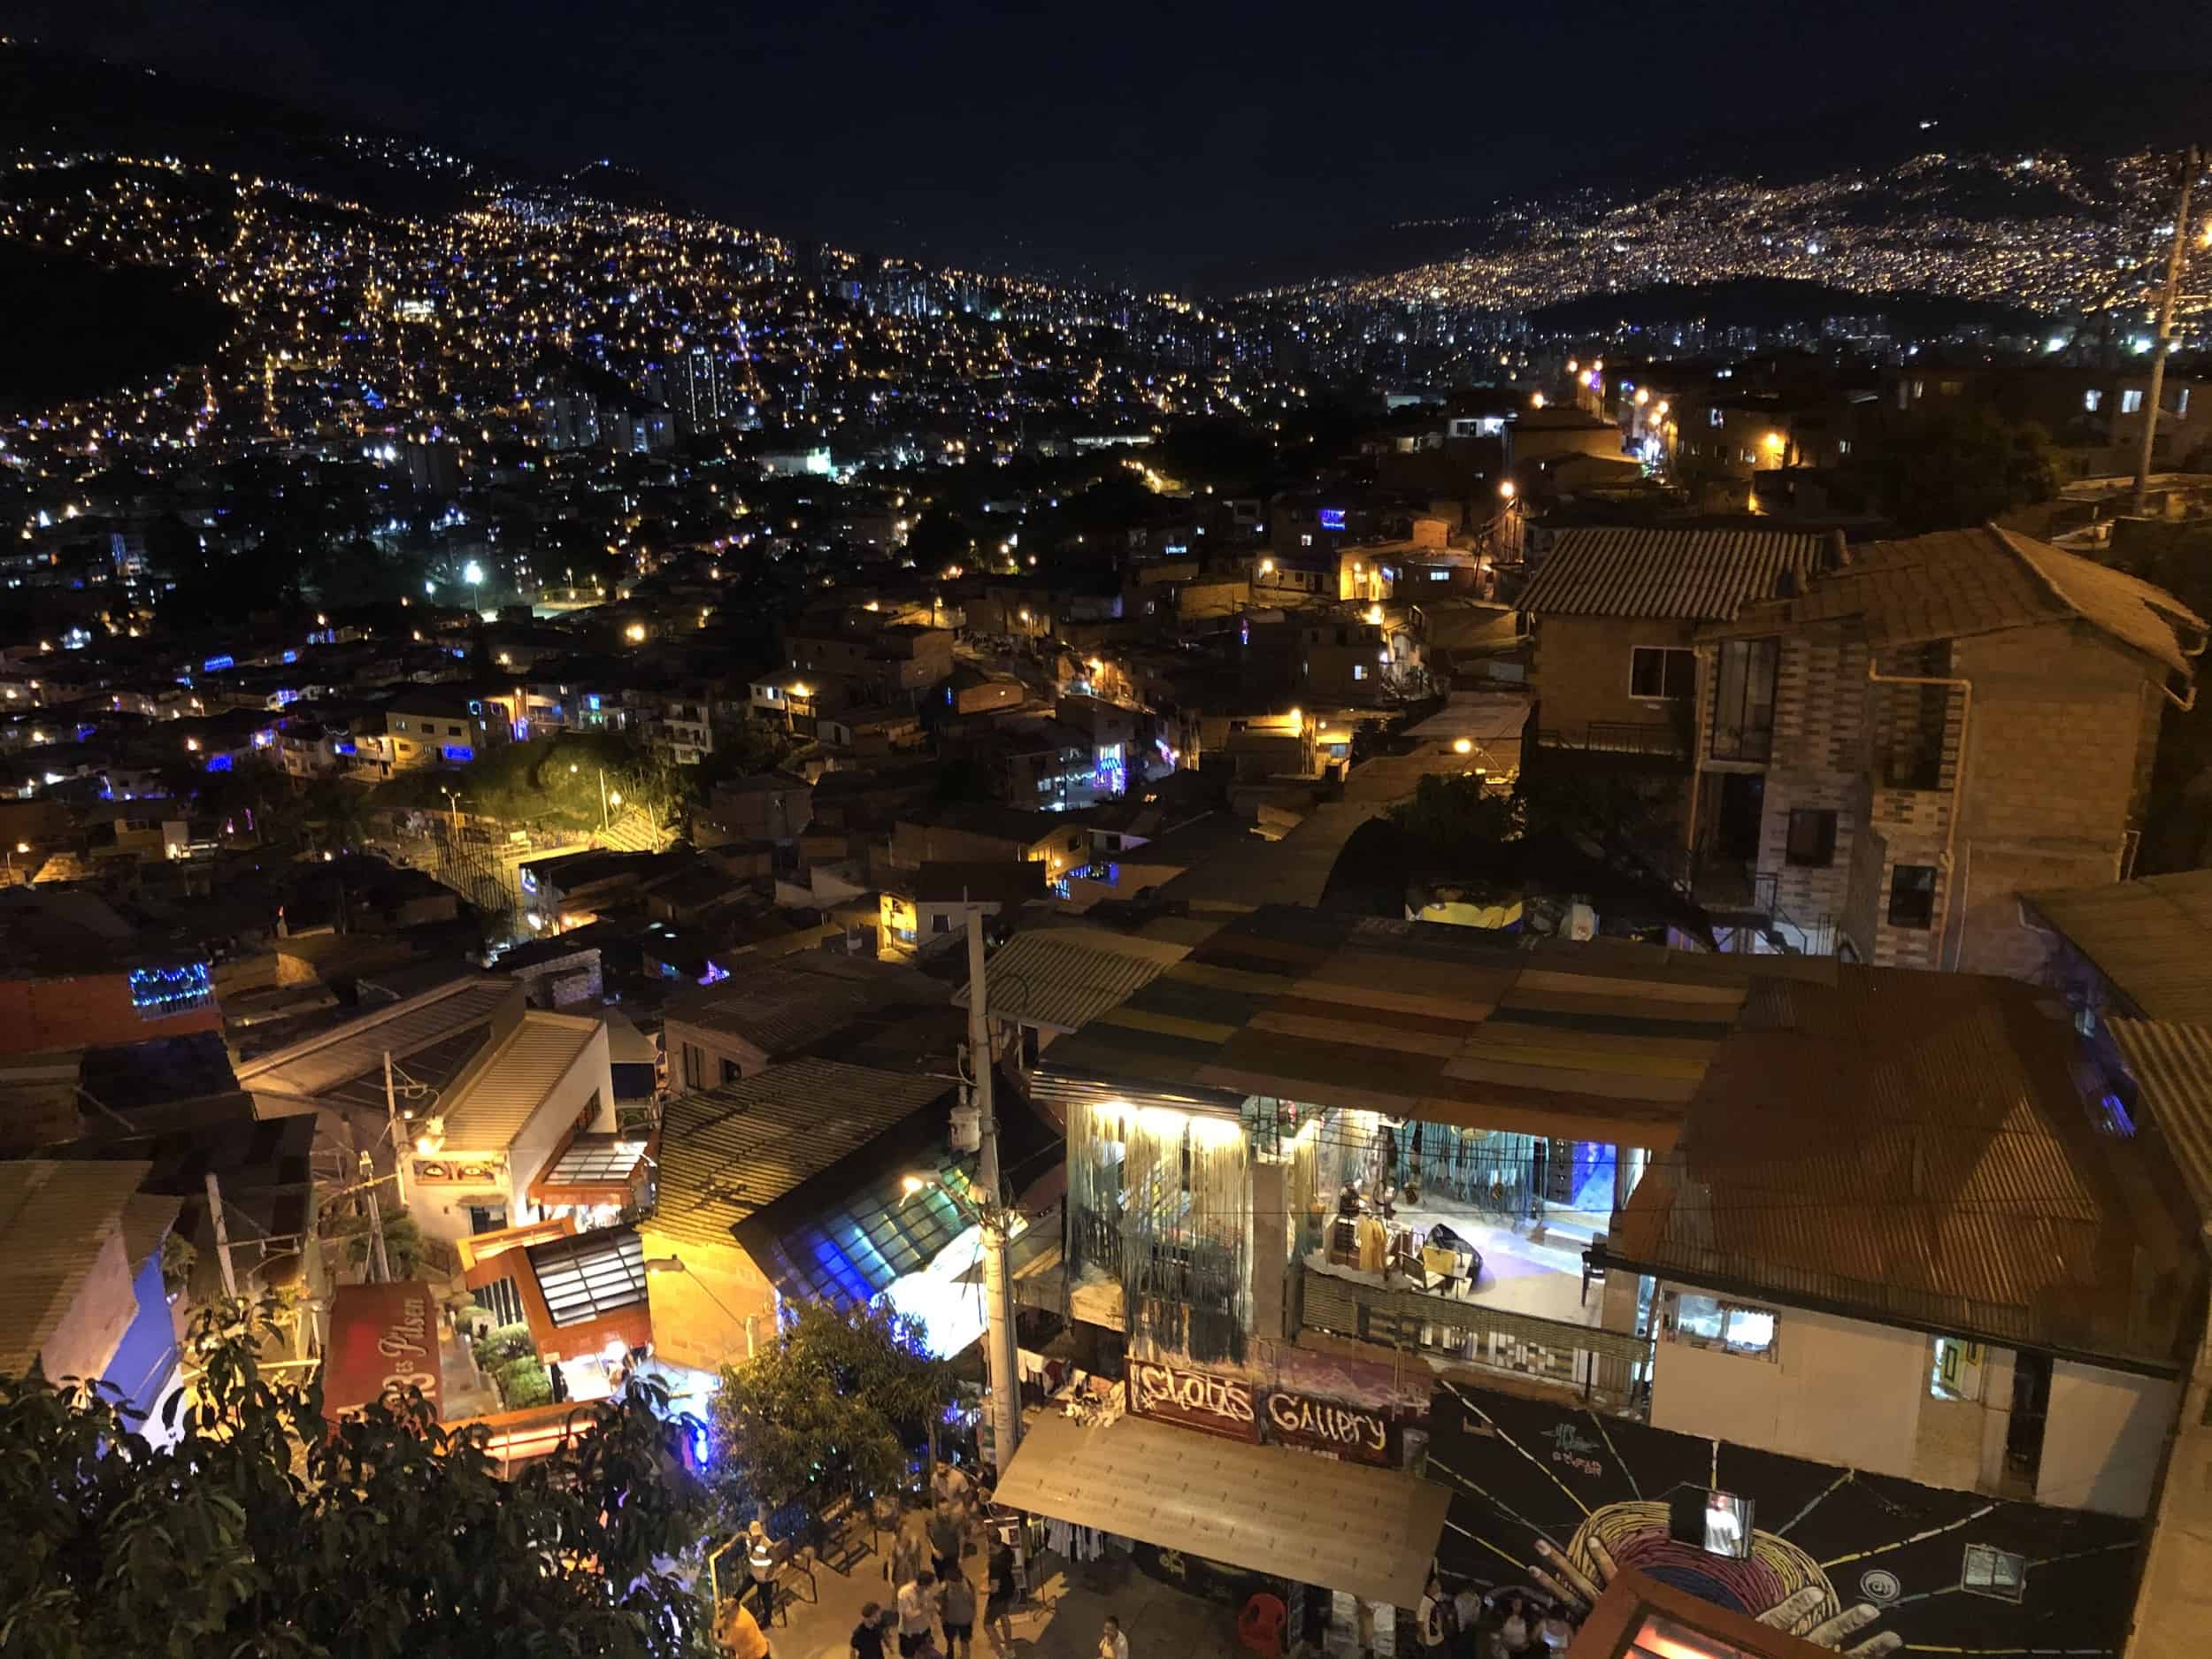 Comuna 13 at night